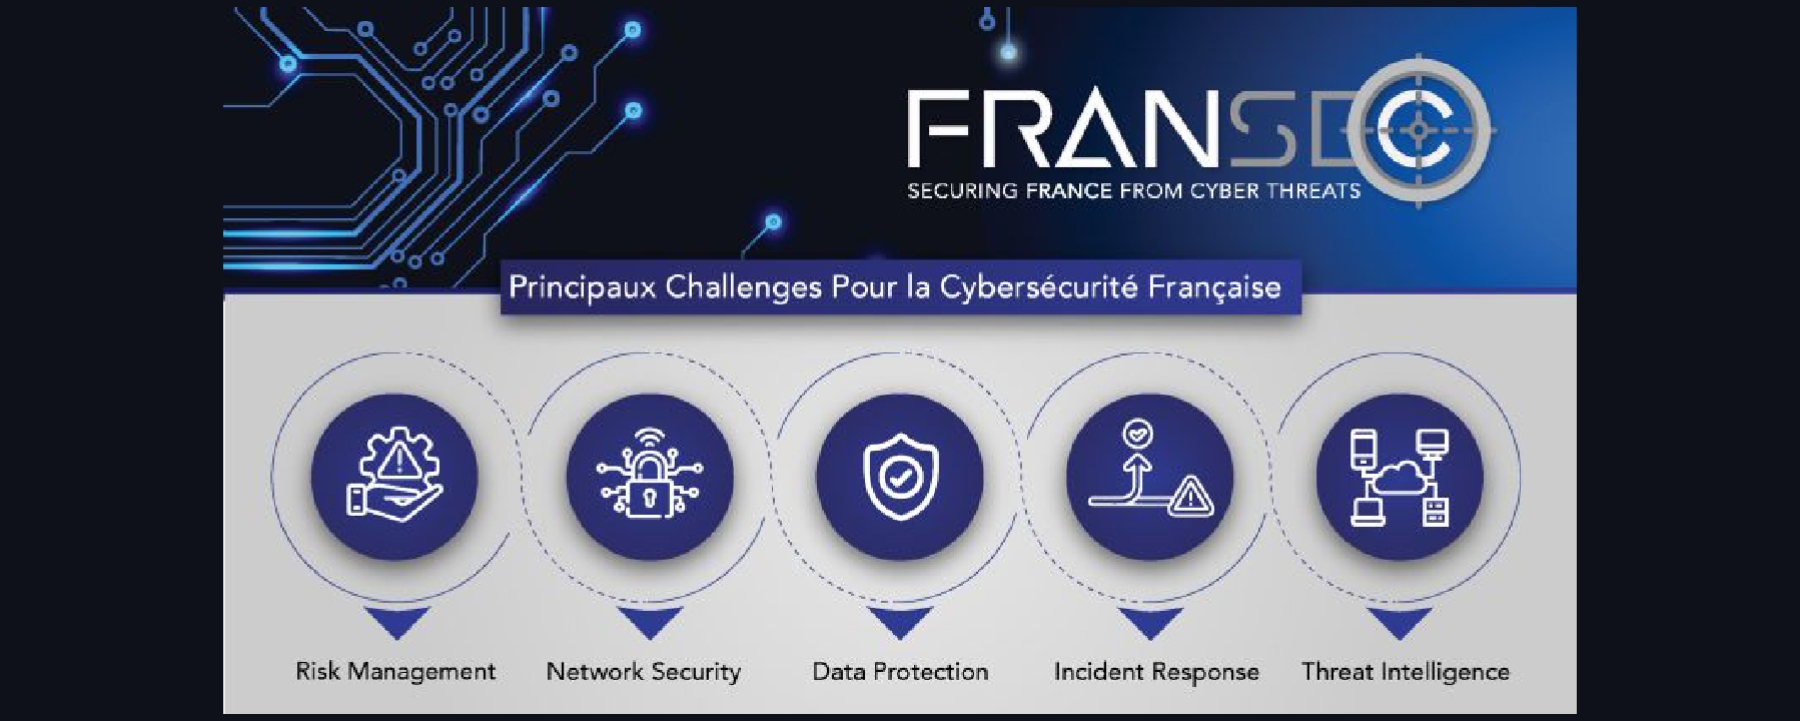 FranSec : Conférence Sur La Sécurité Informatique